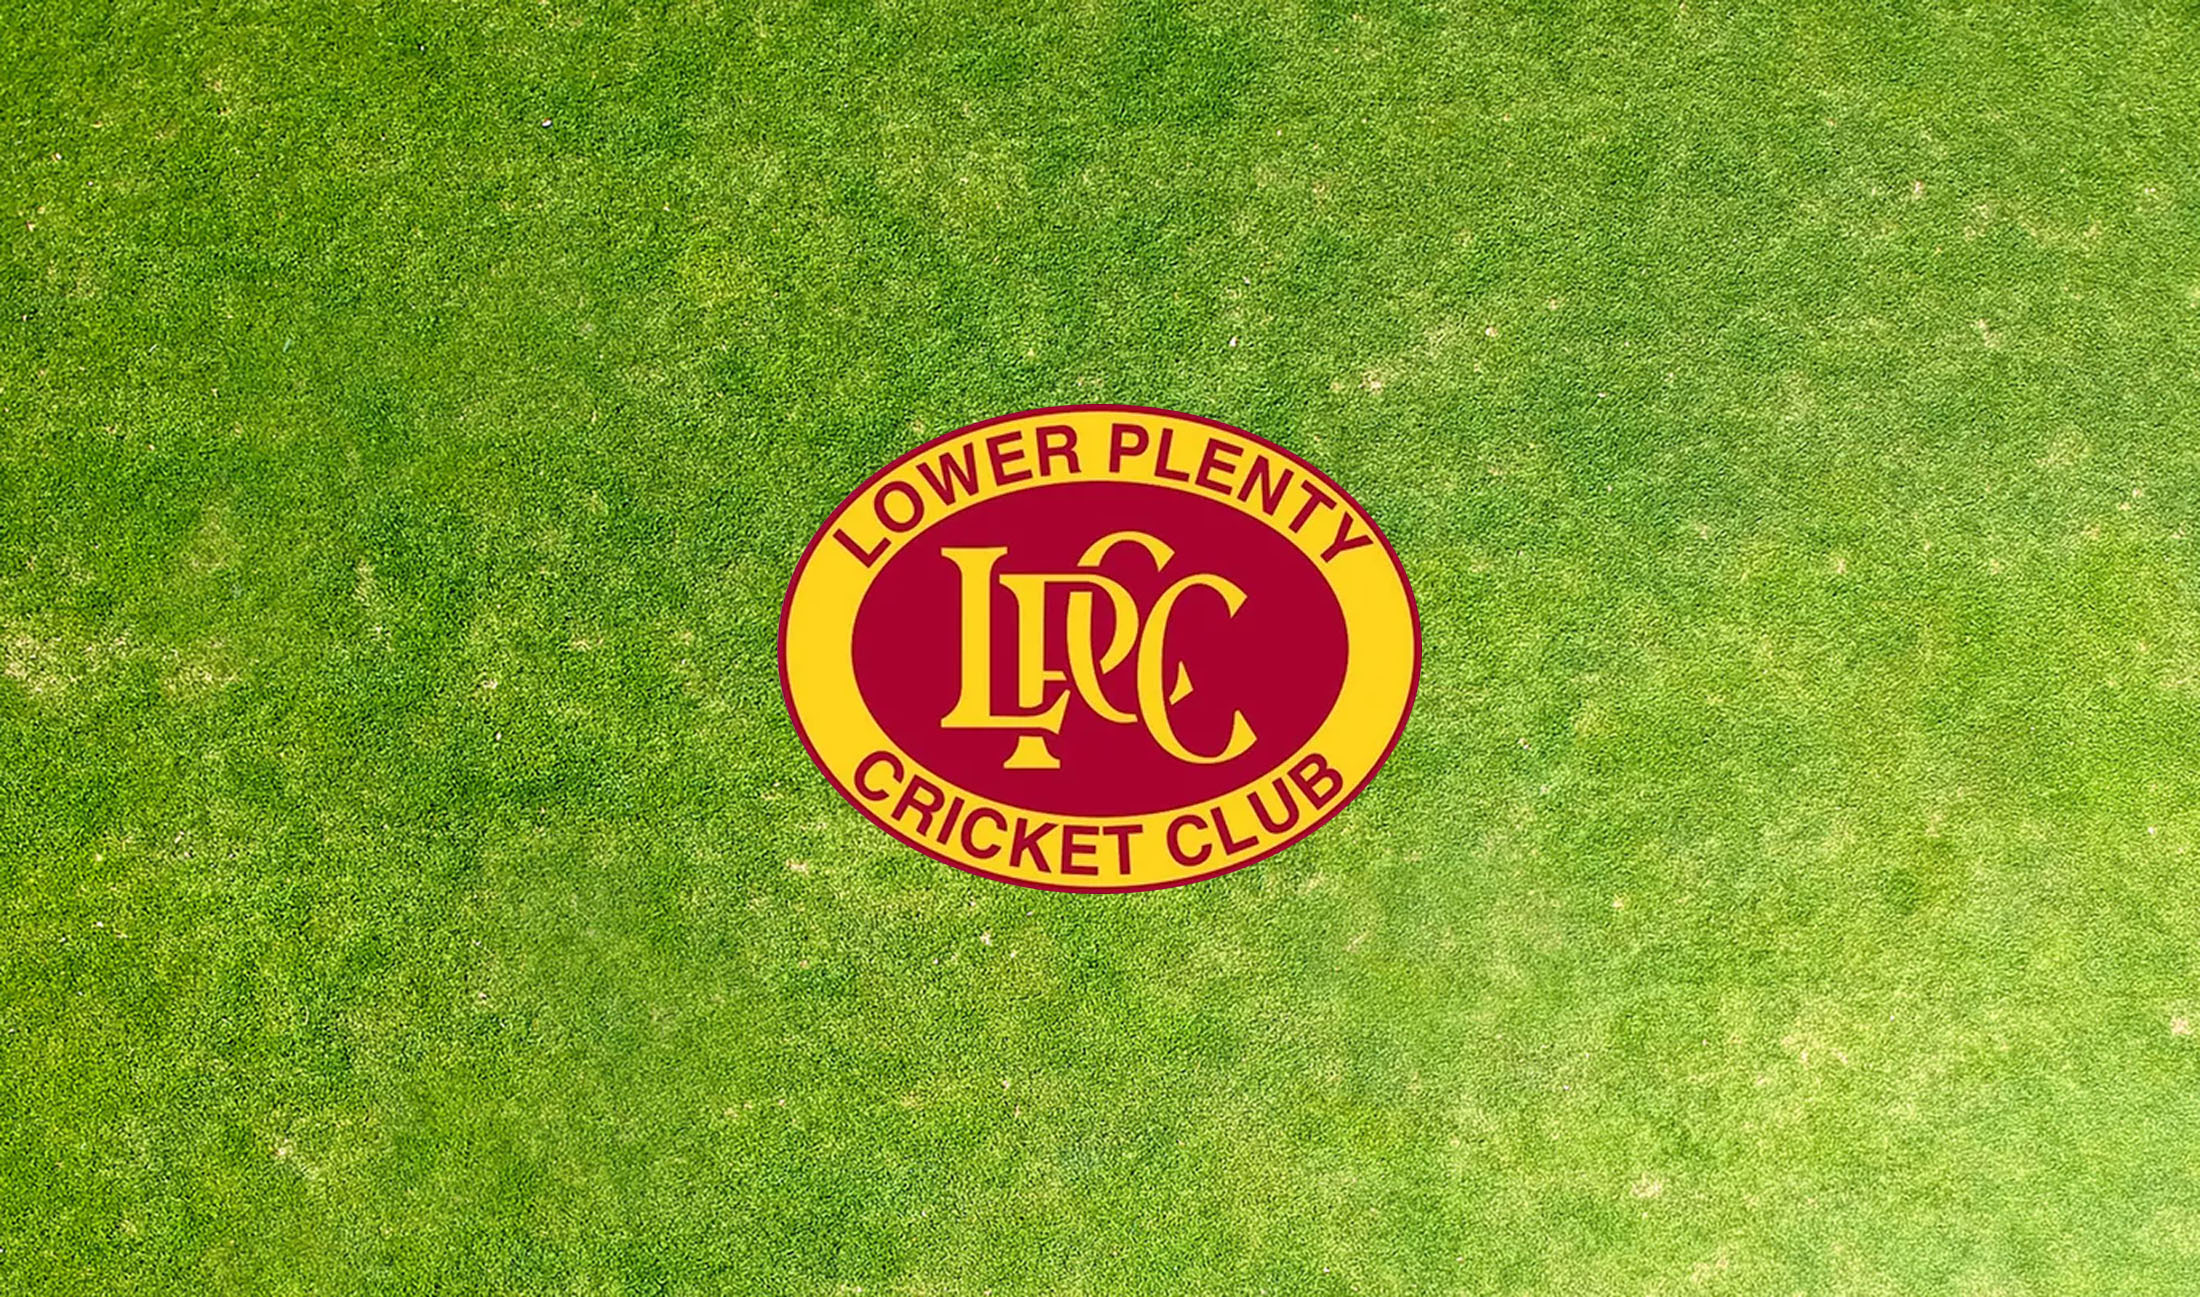 Lower Plenty Cricket Club seeking Senior Coach for season 2022/23